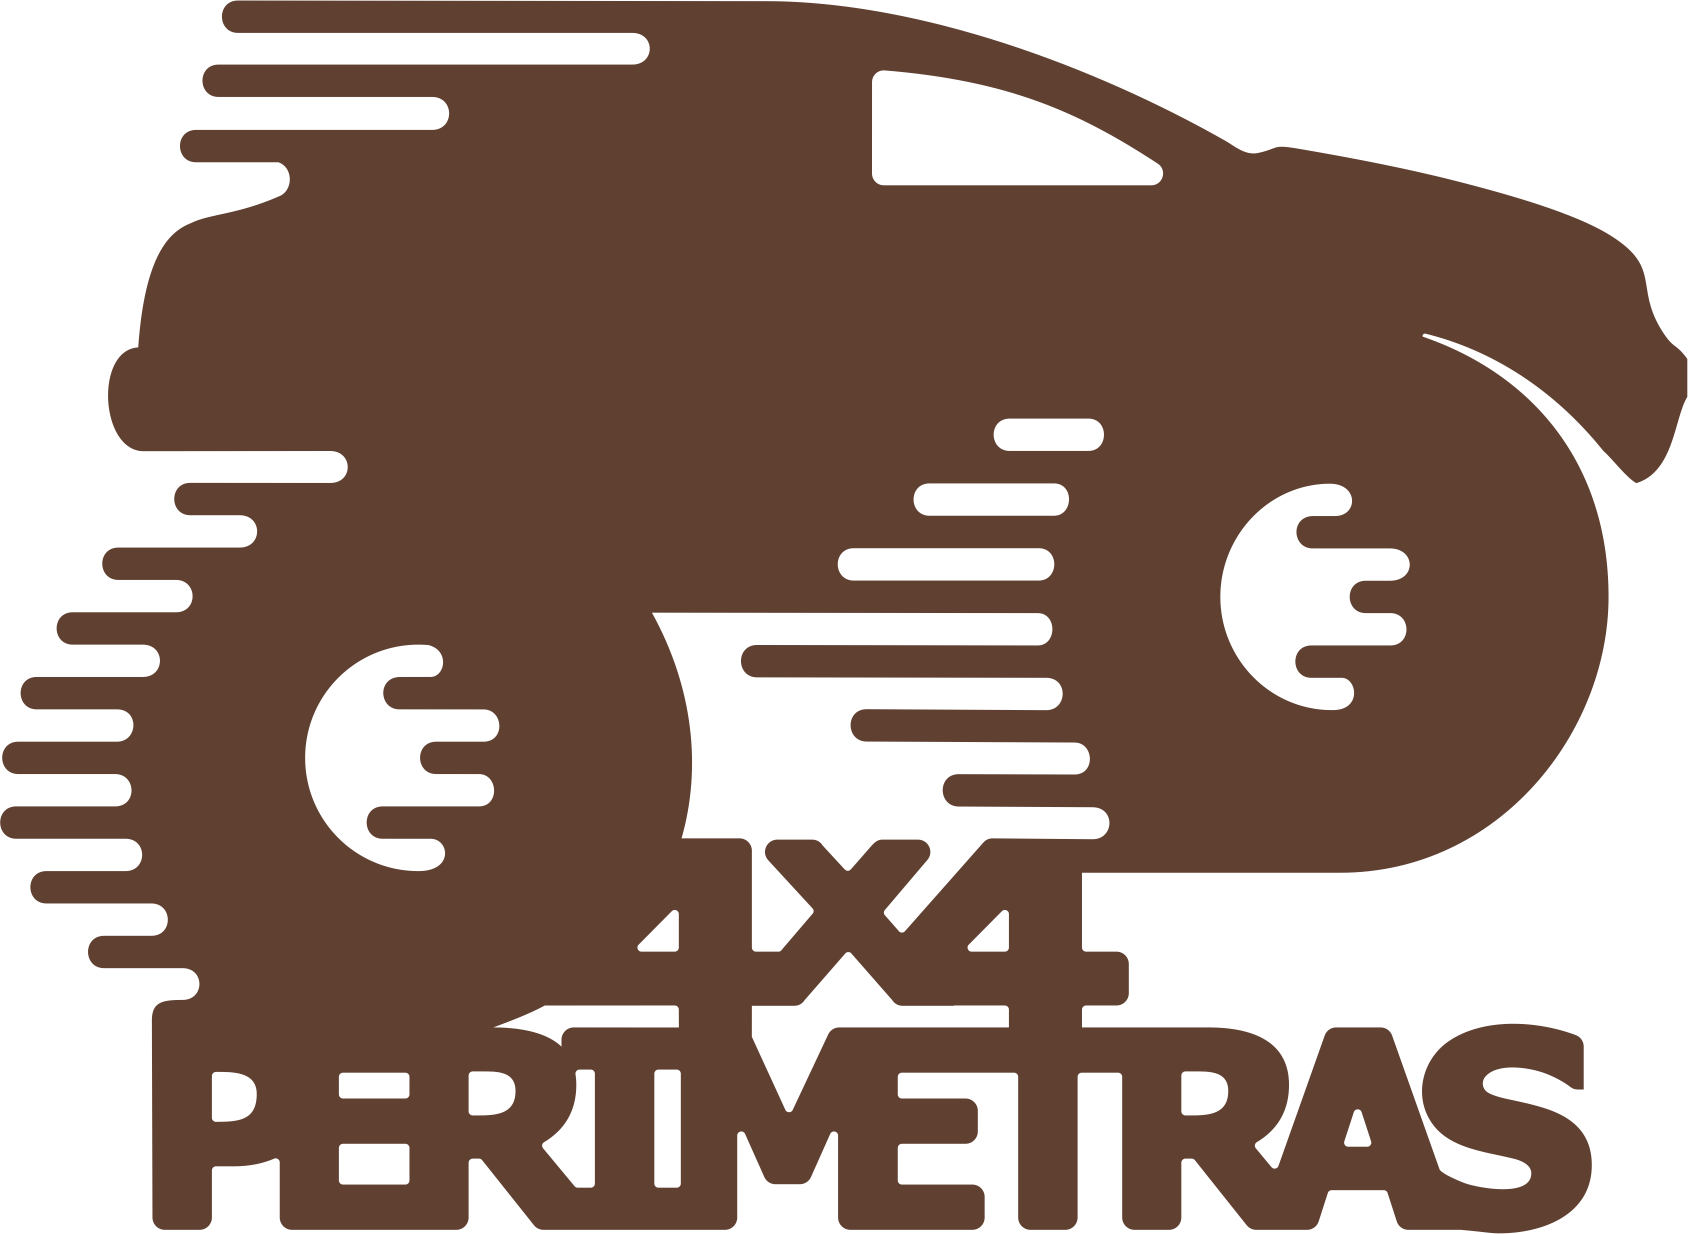 4x4p 2019 logo final_1